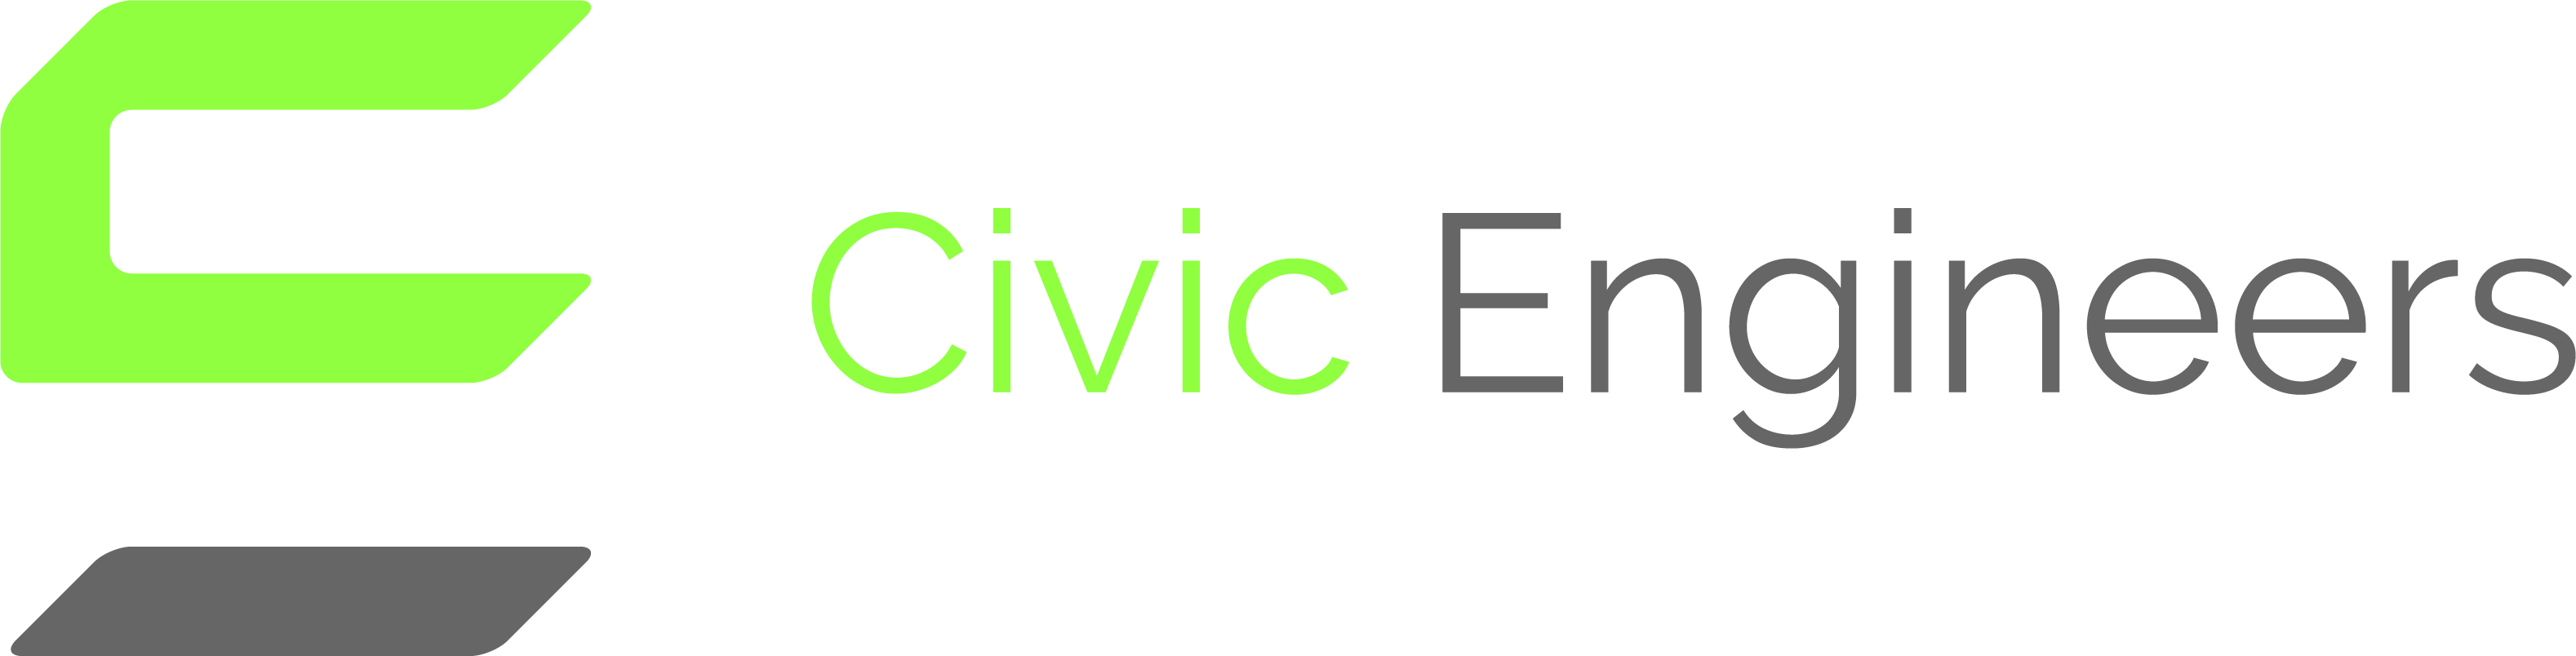 Civic Engineers logo